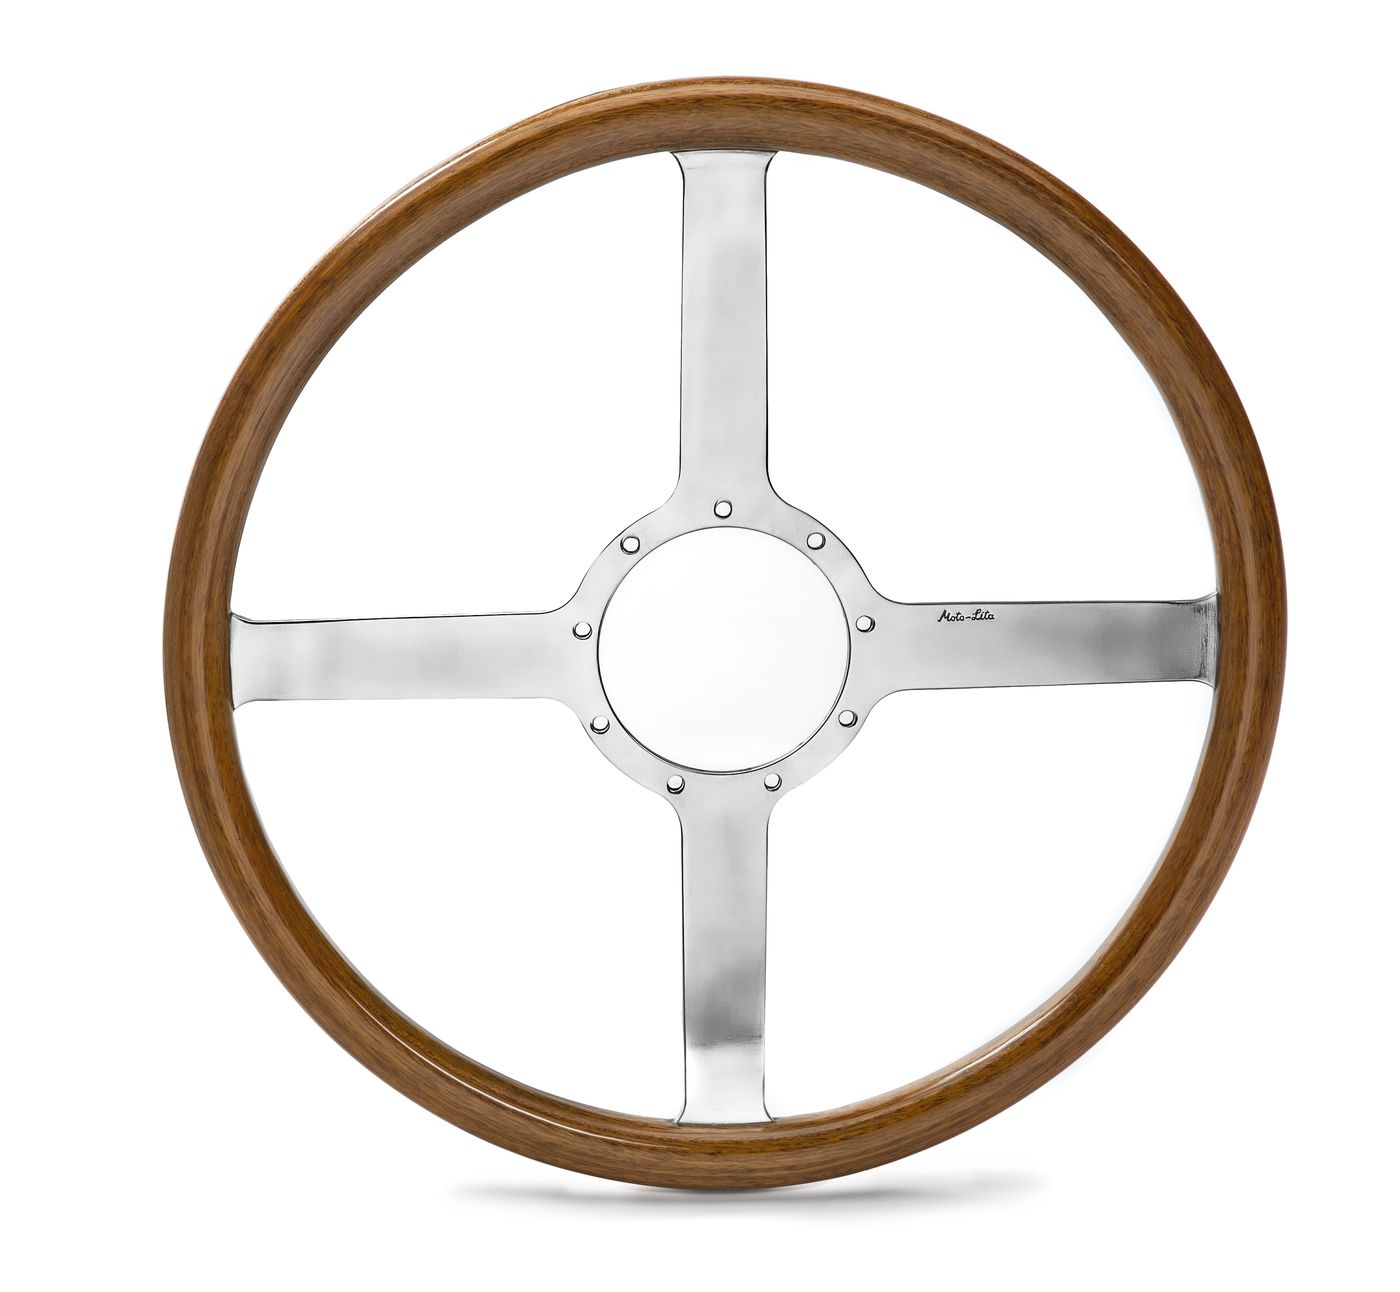 Holzlenkrad
Woodrim steering wheel
Volant en bois
Kierownica dre